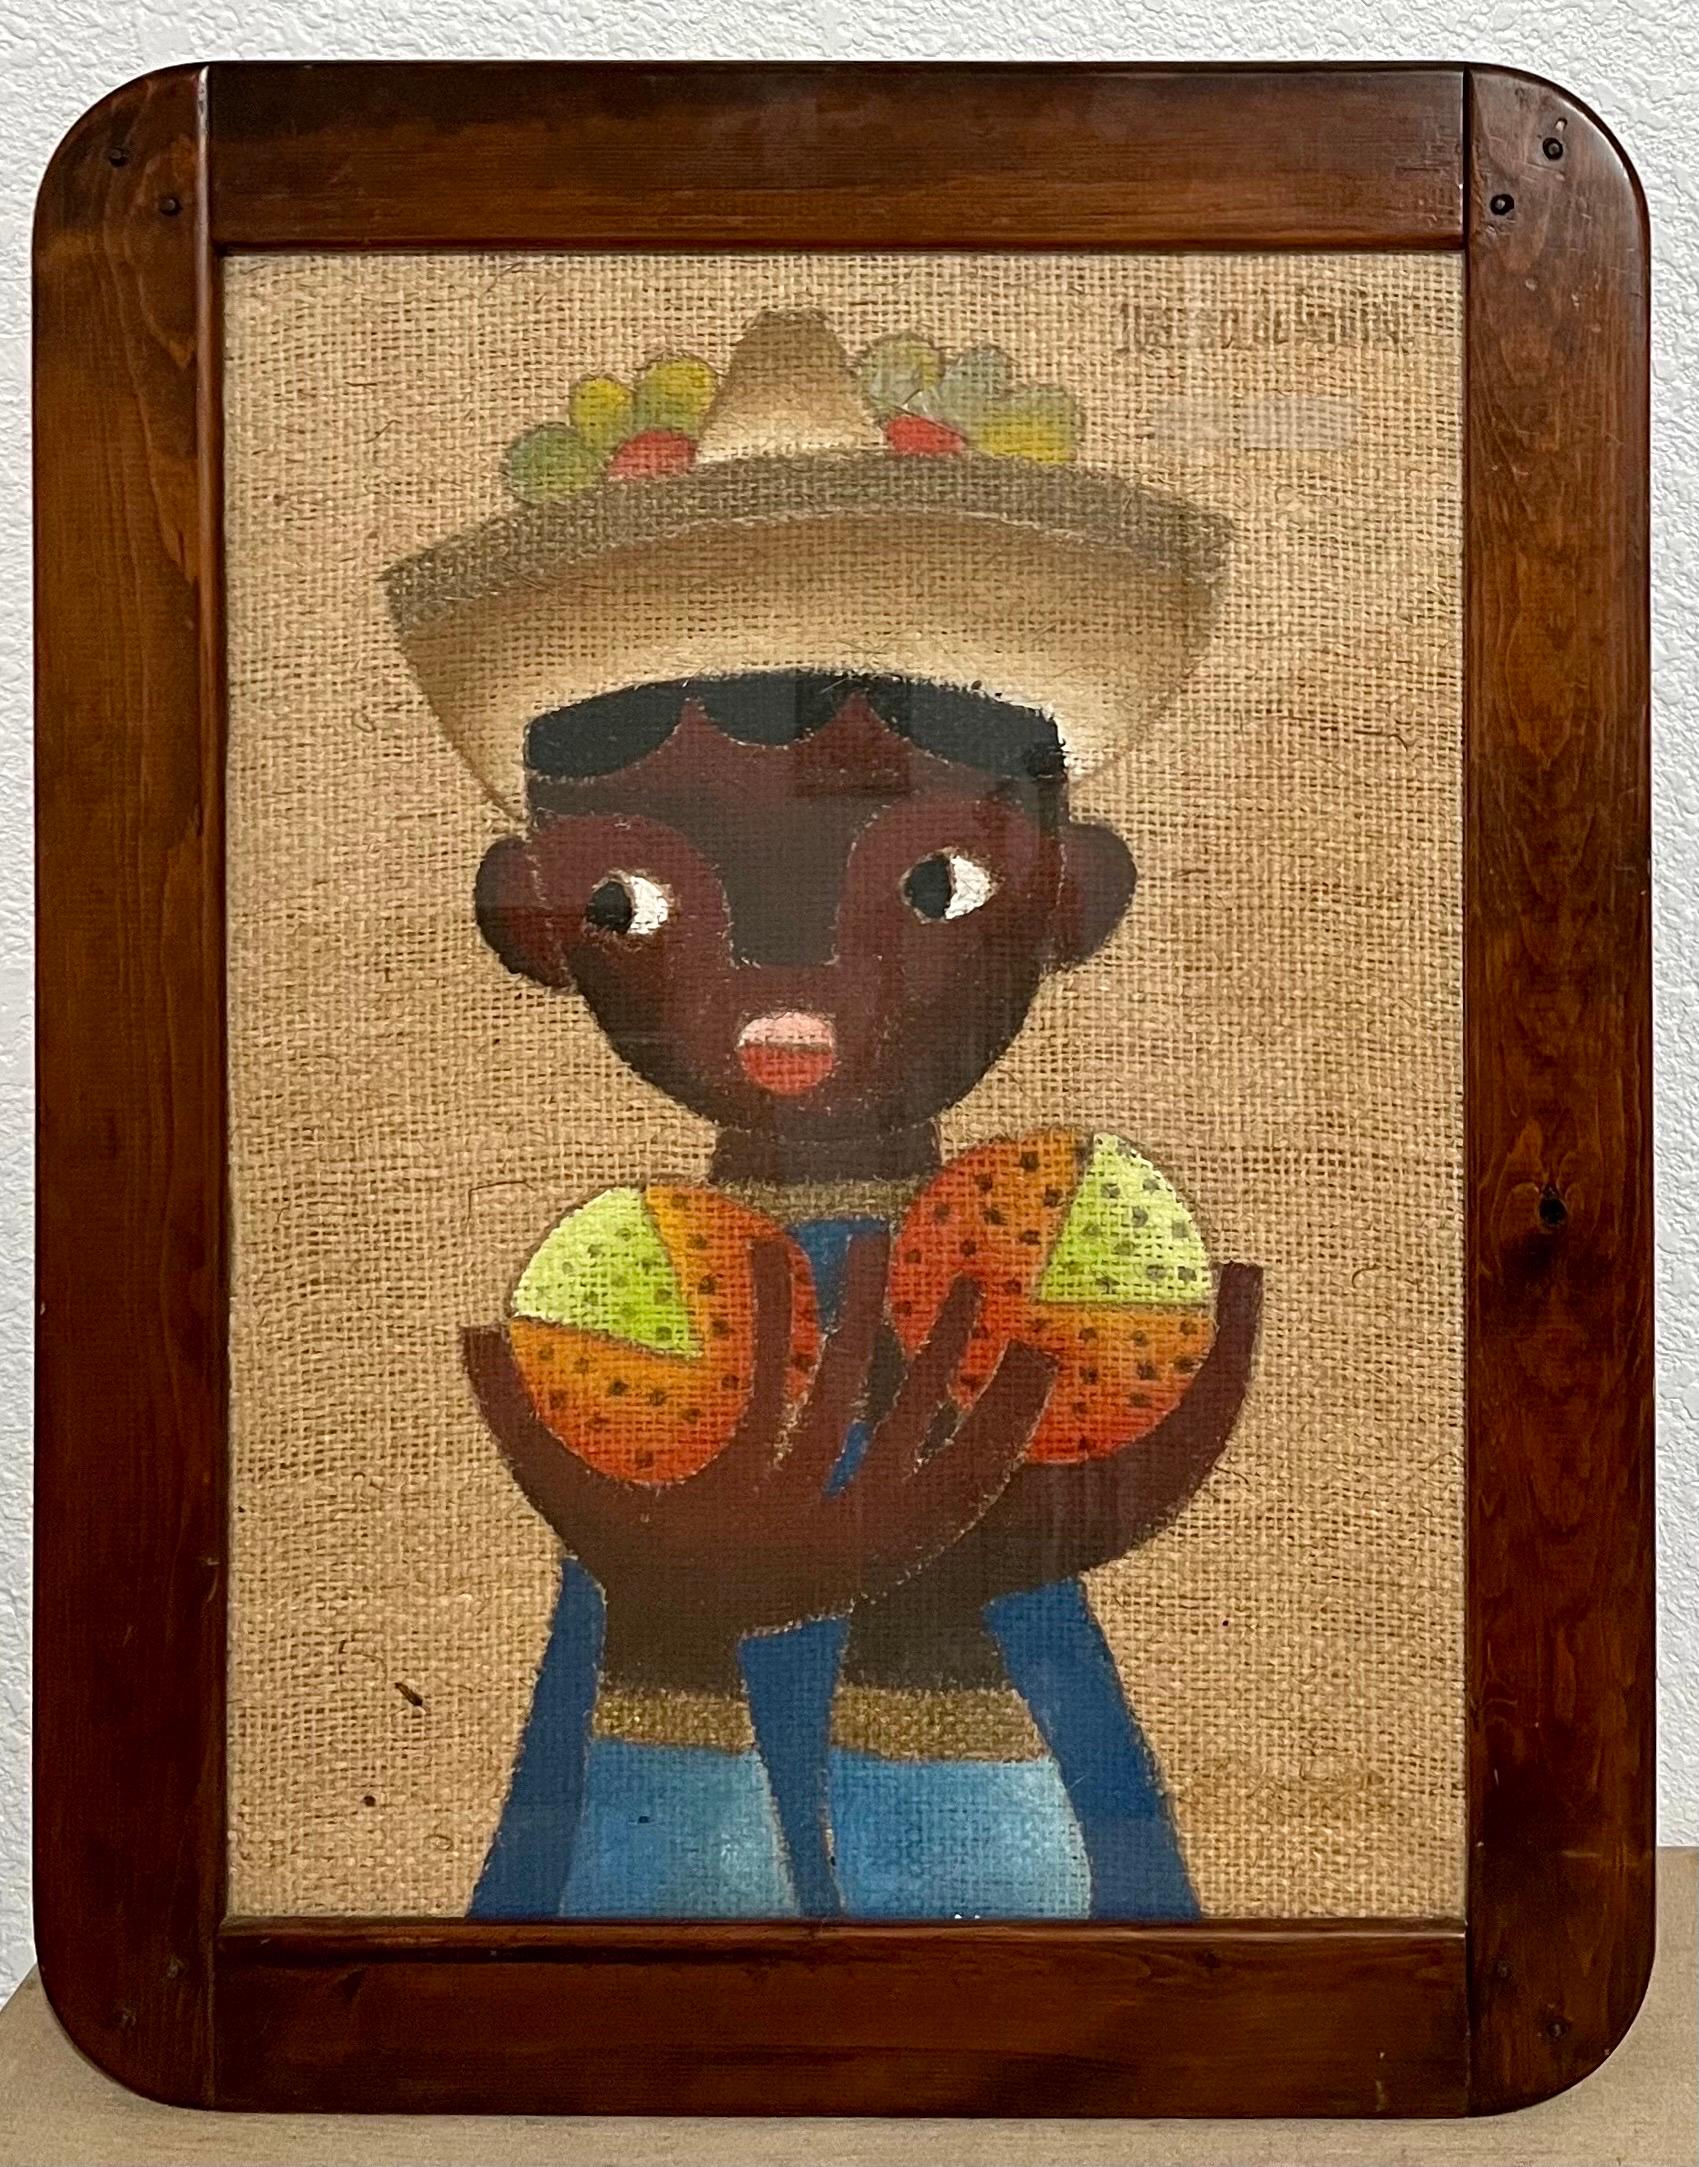 

Gerahmt 29 X 23 
Bild 18 X 24

Die Süße, die das Werk des mexikanischen Malers Jose Maria de Servin (1917-83) kennzeichnet, ist eine melancholische und ruhige Angelegenheit. Er arbeitete zwar im modernsten Stil, passte ihn aber an einen